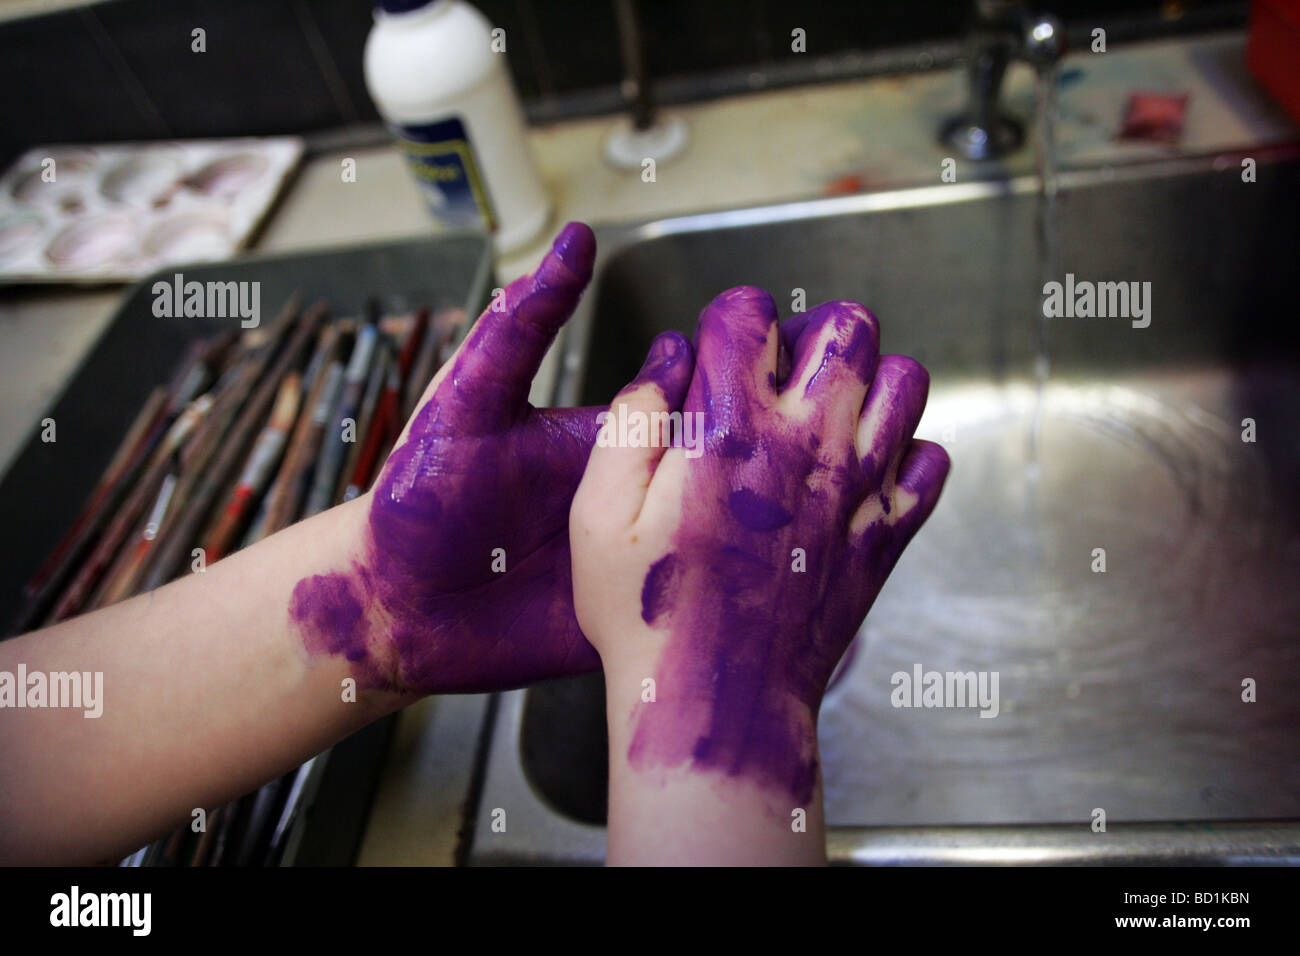 Ein Kind wäscht seine Hände nach einer Schule-Malerei-Sitzung Stockfoto